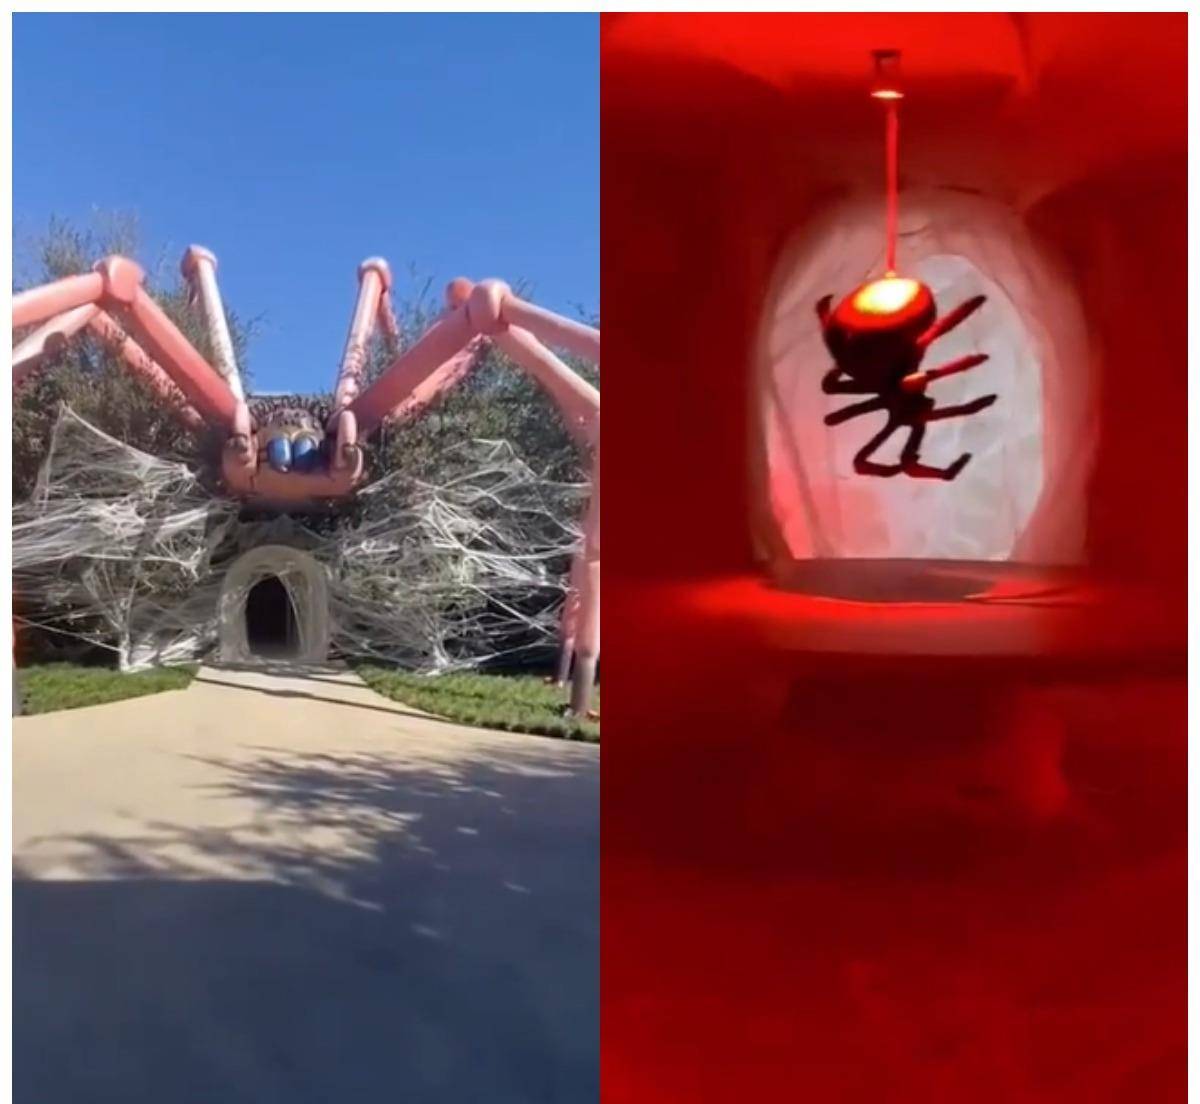 金 卡戴珊为万圣节准备 用巨型蜘蛛装饰大门 奇葩造型惊呆 都会 新闻时间